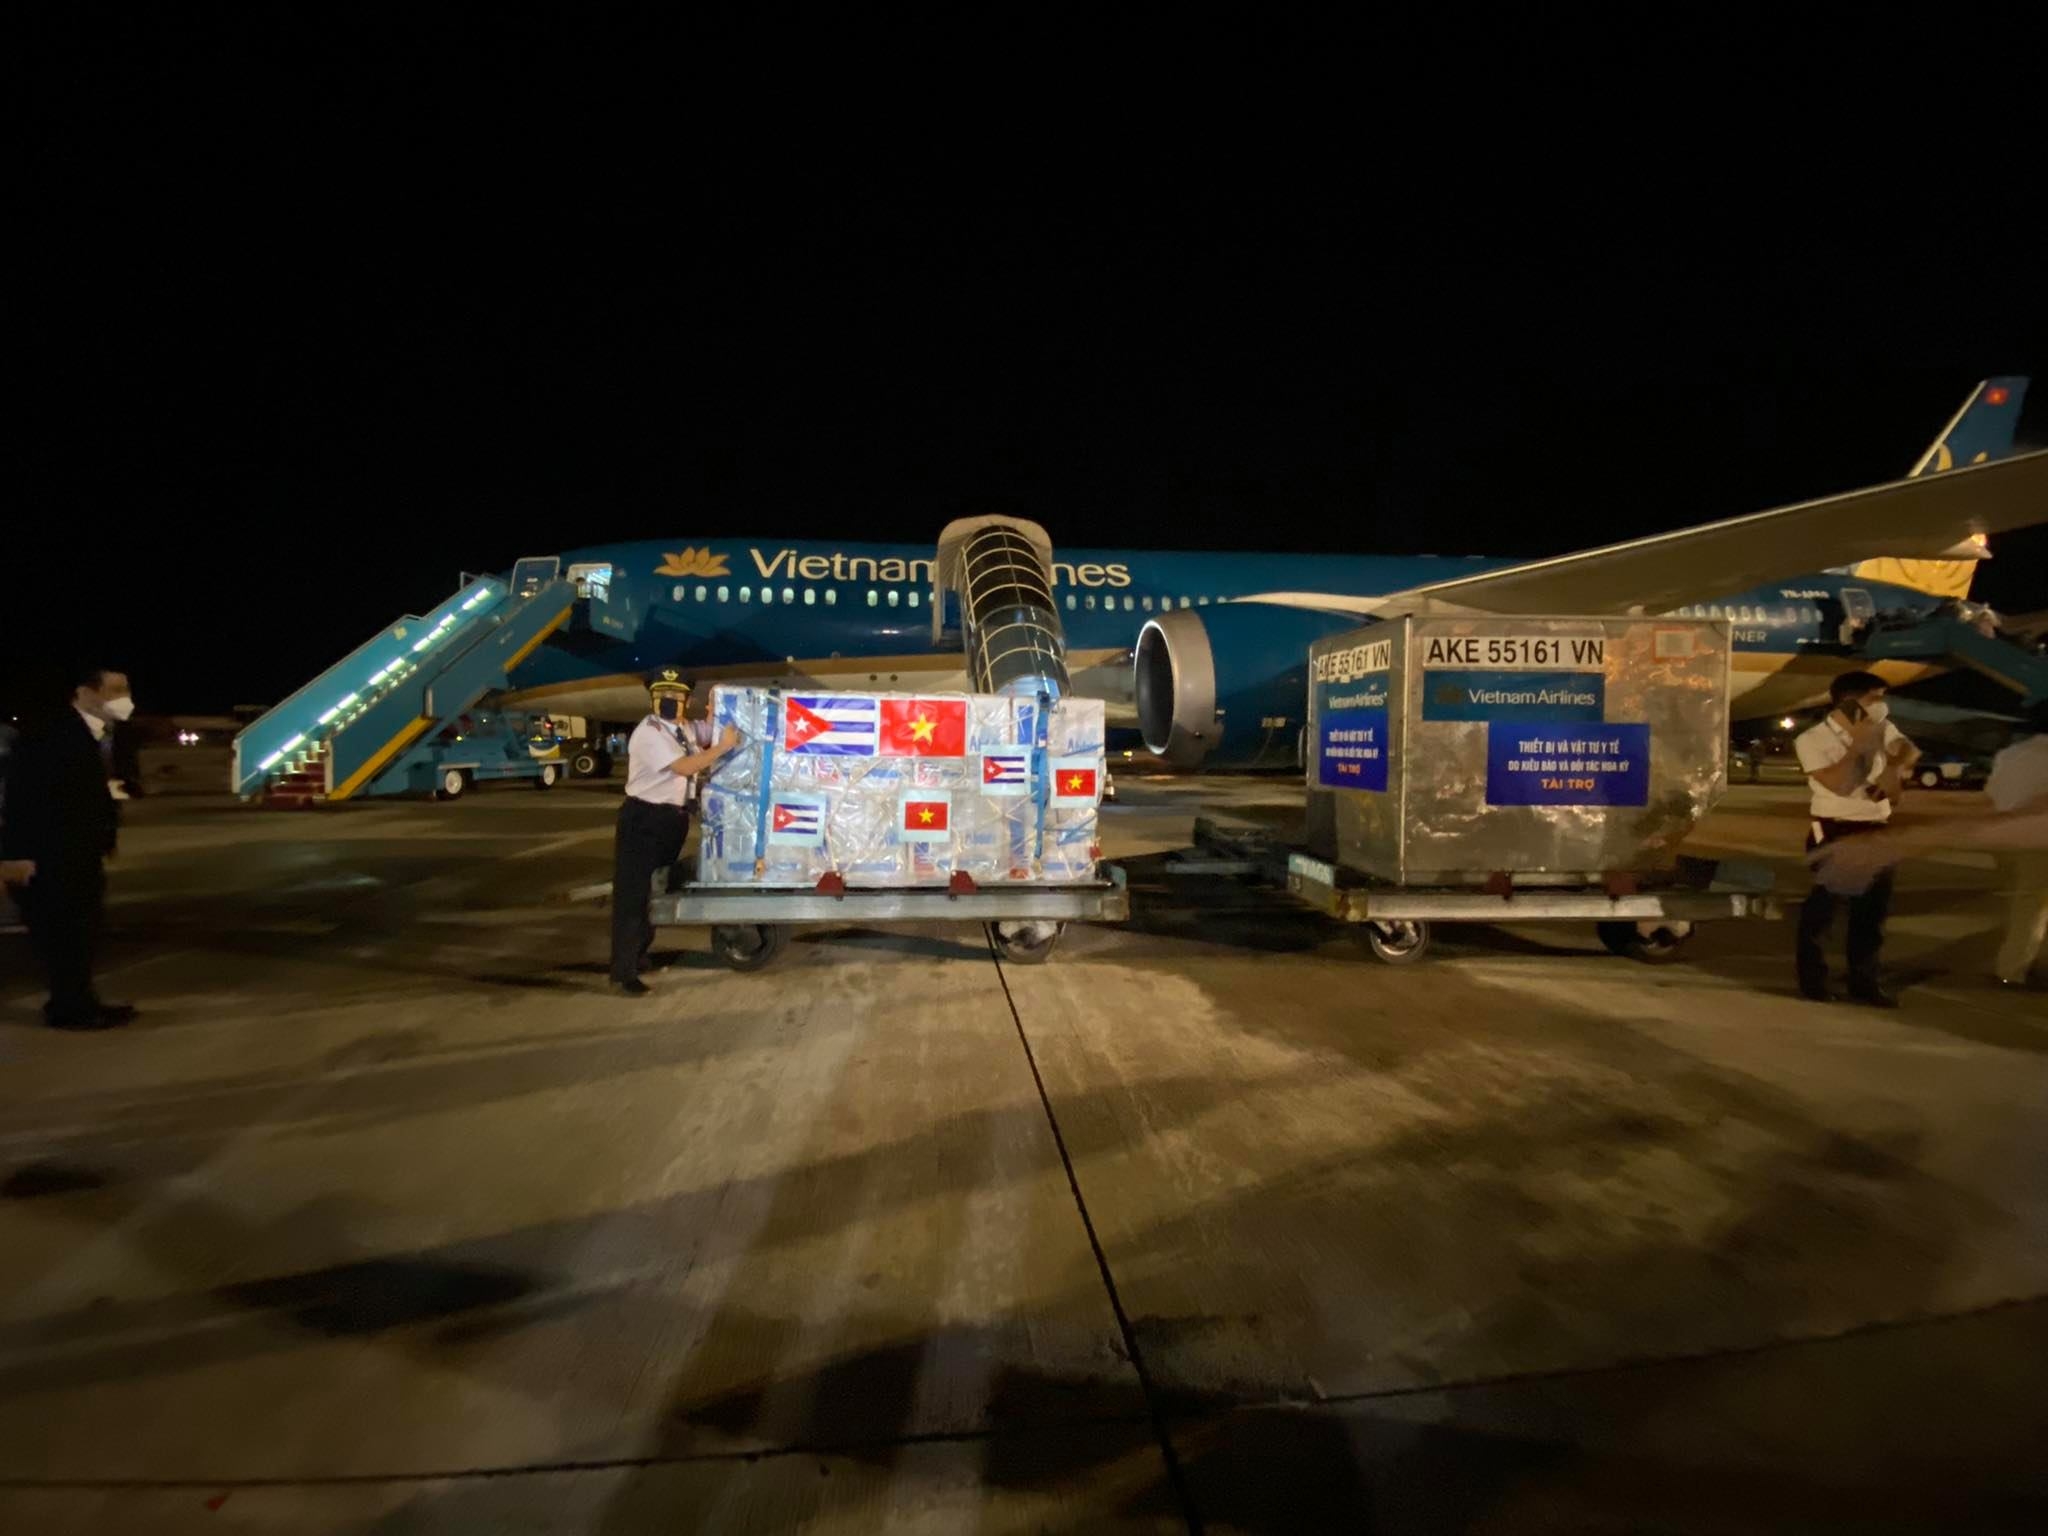 Hơn 1 triệu liều vắc xin COVID-19 Cuba hạ cánh tại sân bay Nội Bài